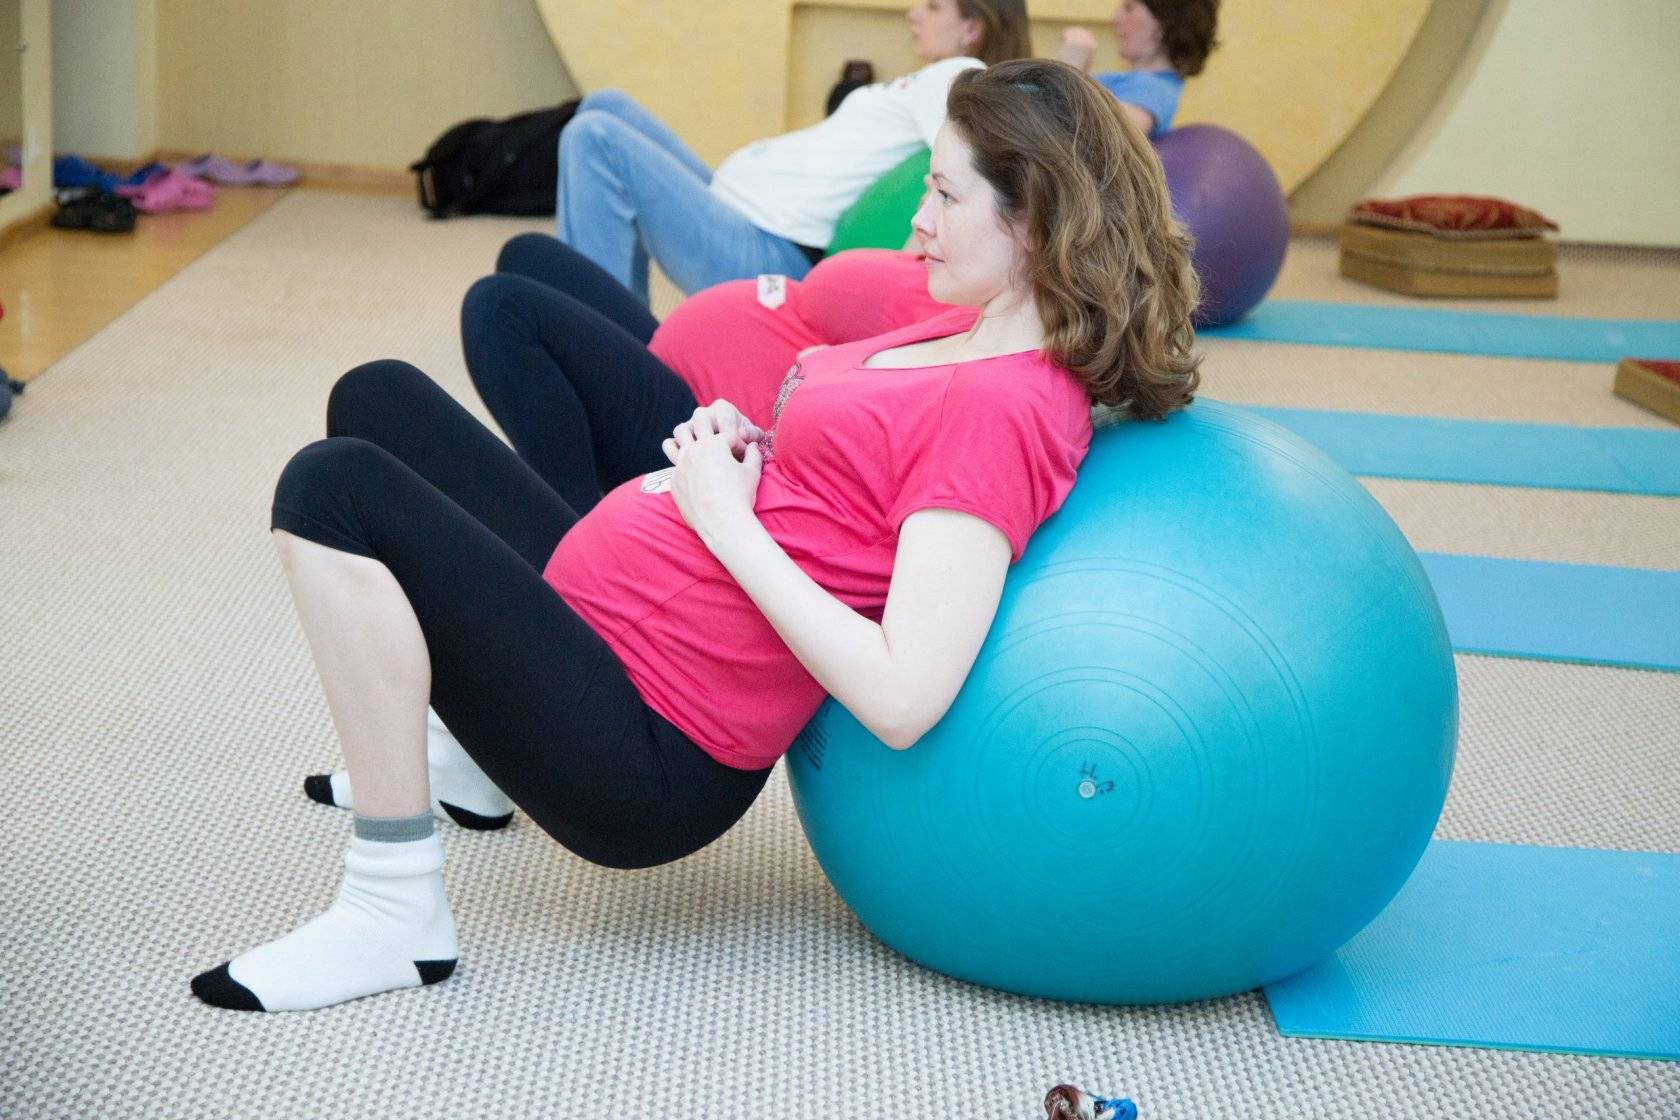 Йоговская дыхательная гимнастика для беременных: рекомендации и предостережения